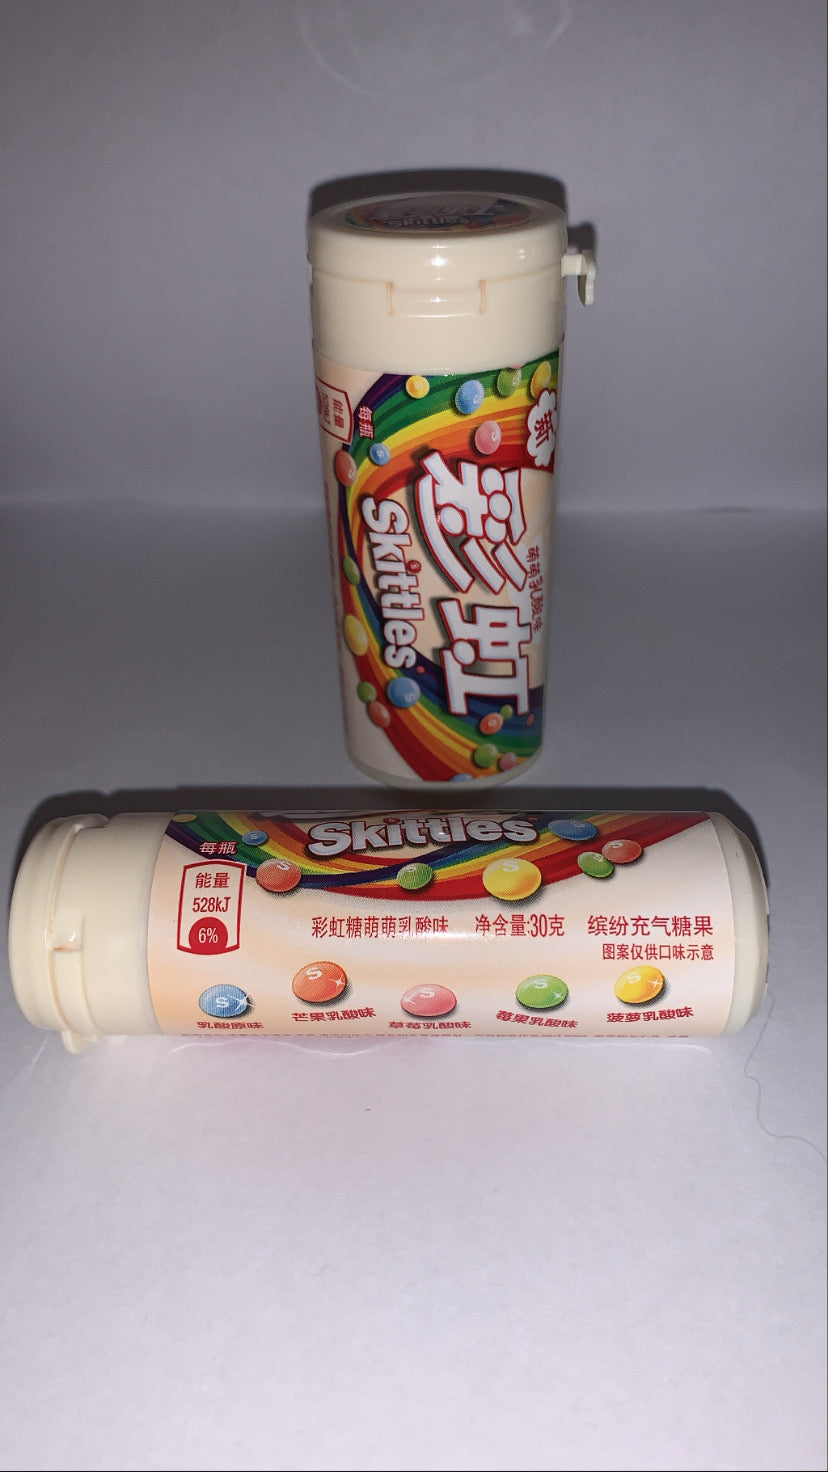 Skittles Yogurt tube (China)